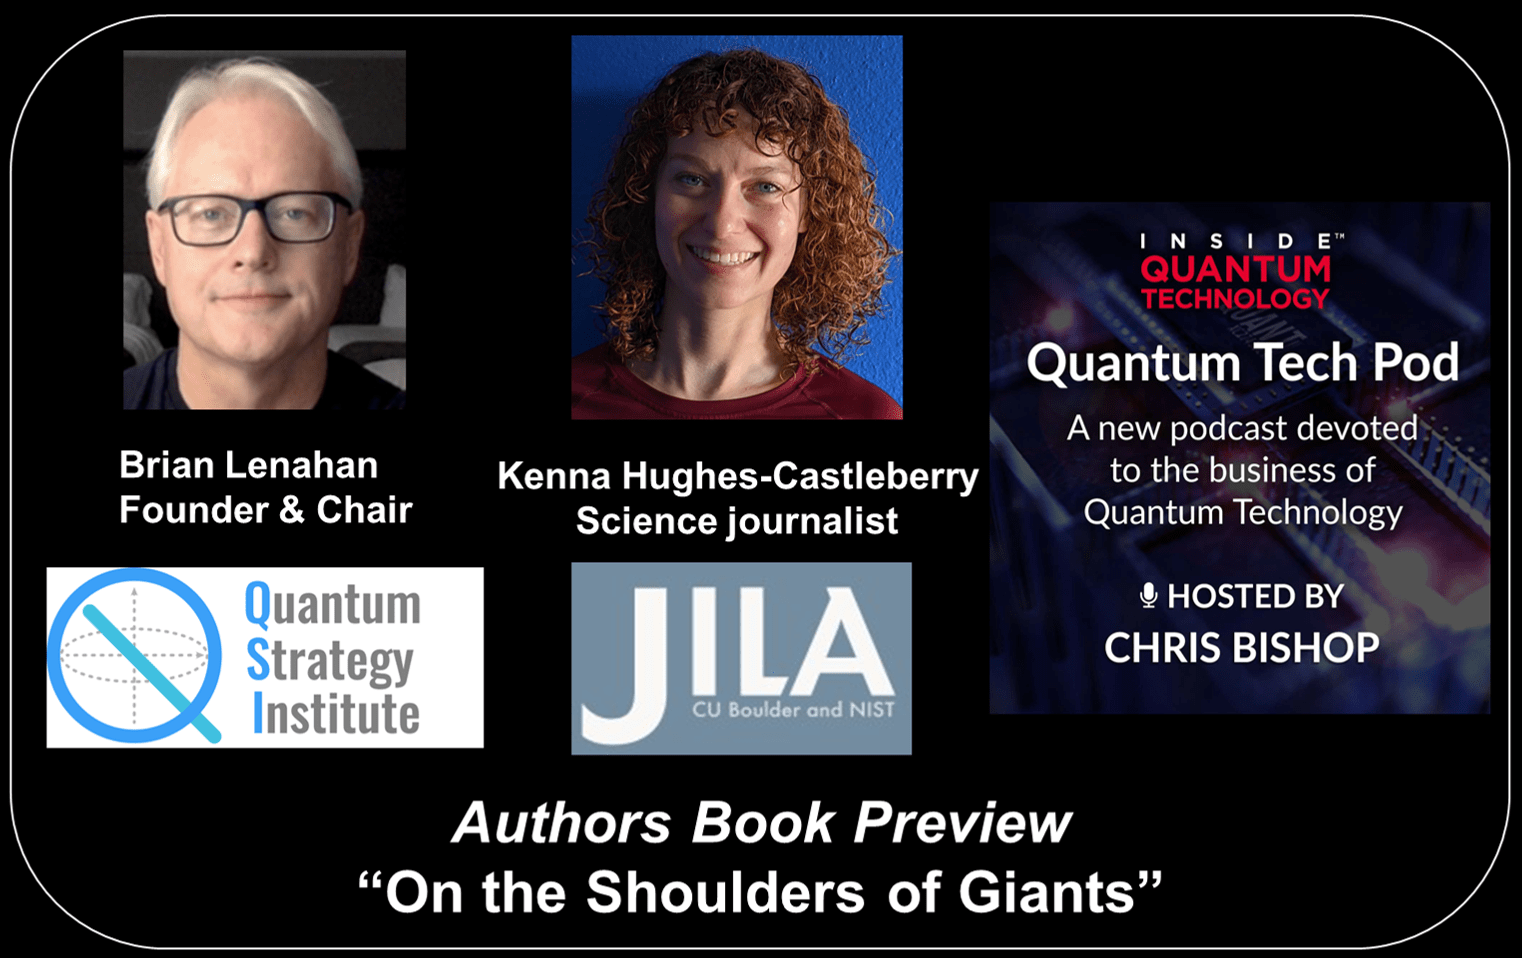 Quantum Tech Pod 47. rész: Brian Lenahan és Kenna Hughes-Castleberry megvitatják „Az óriások vállán” című könyvüket